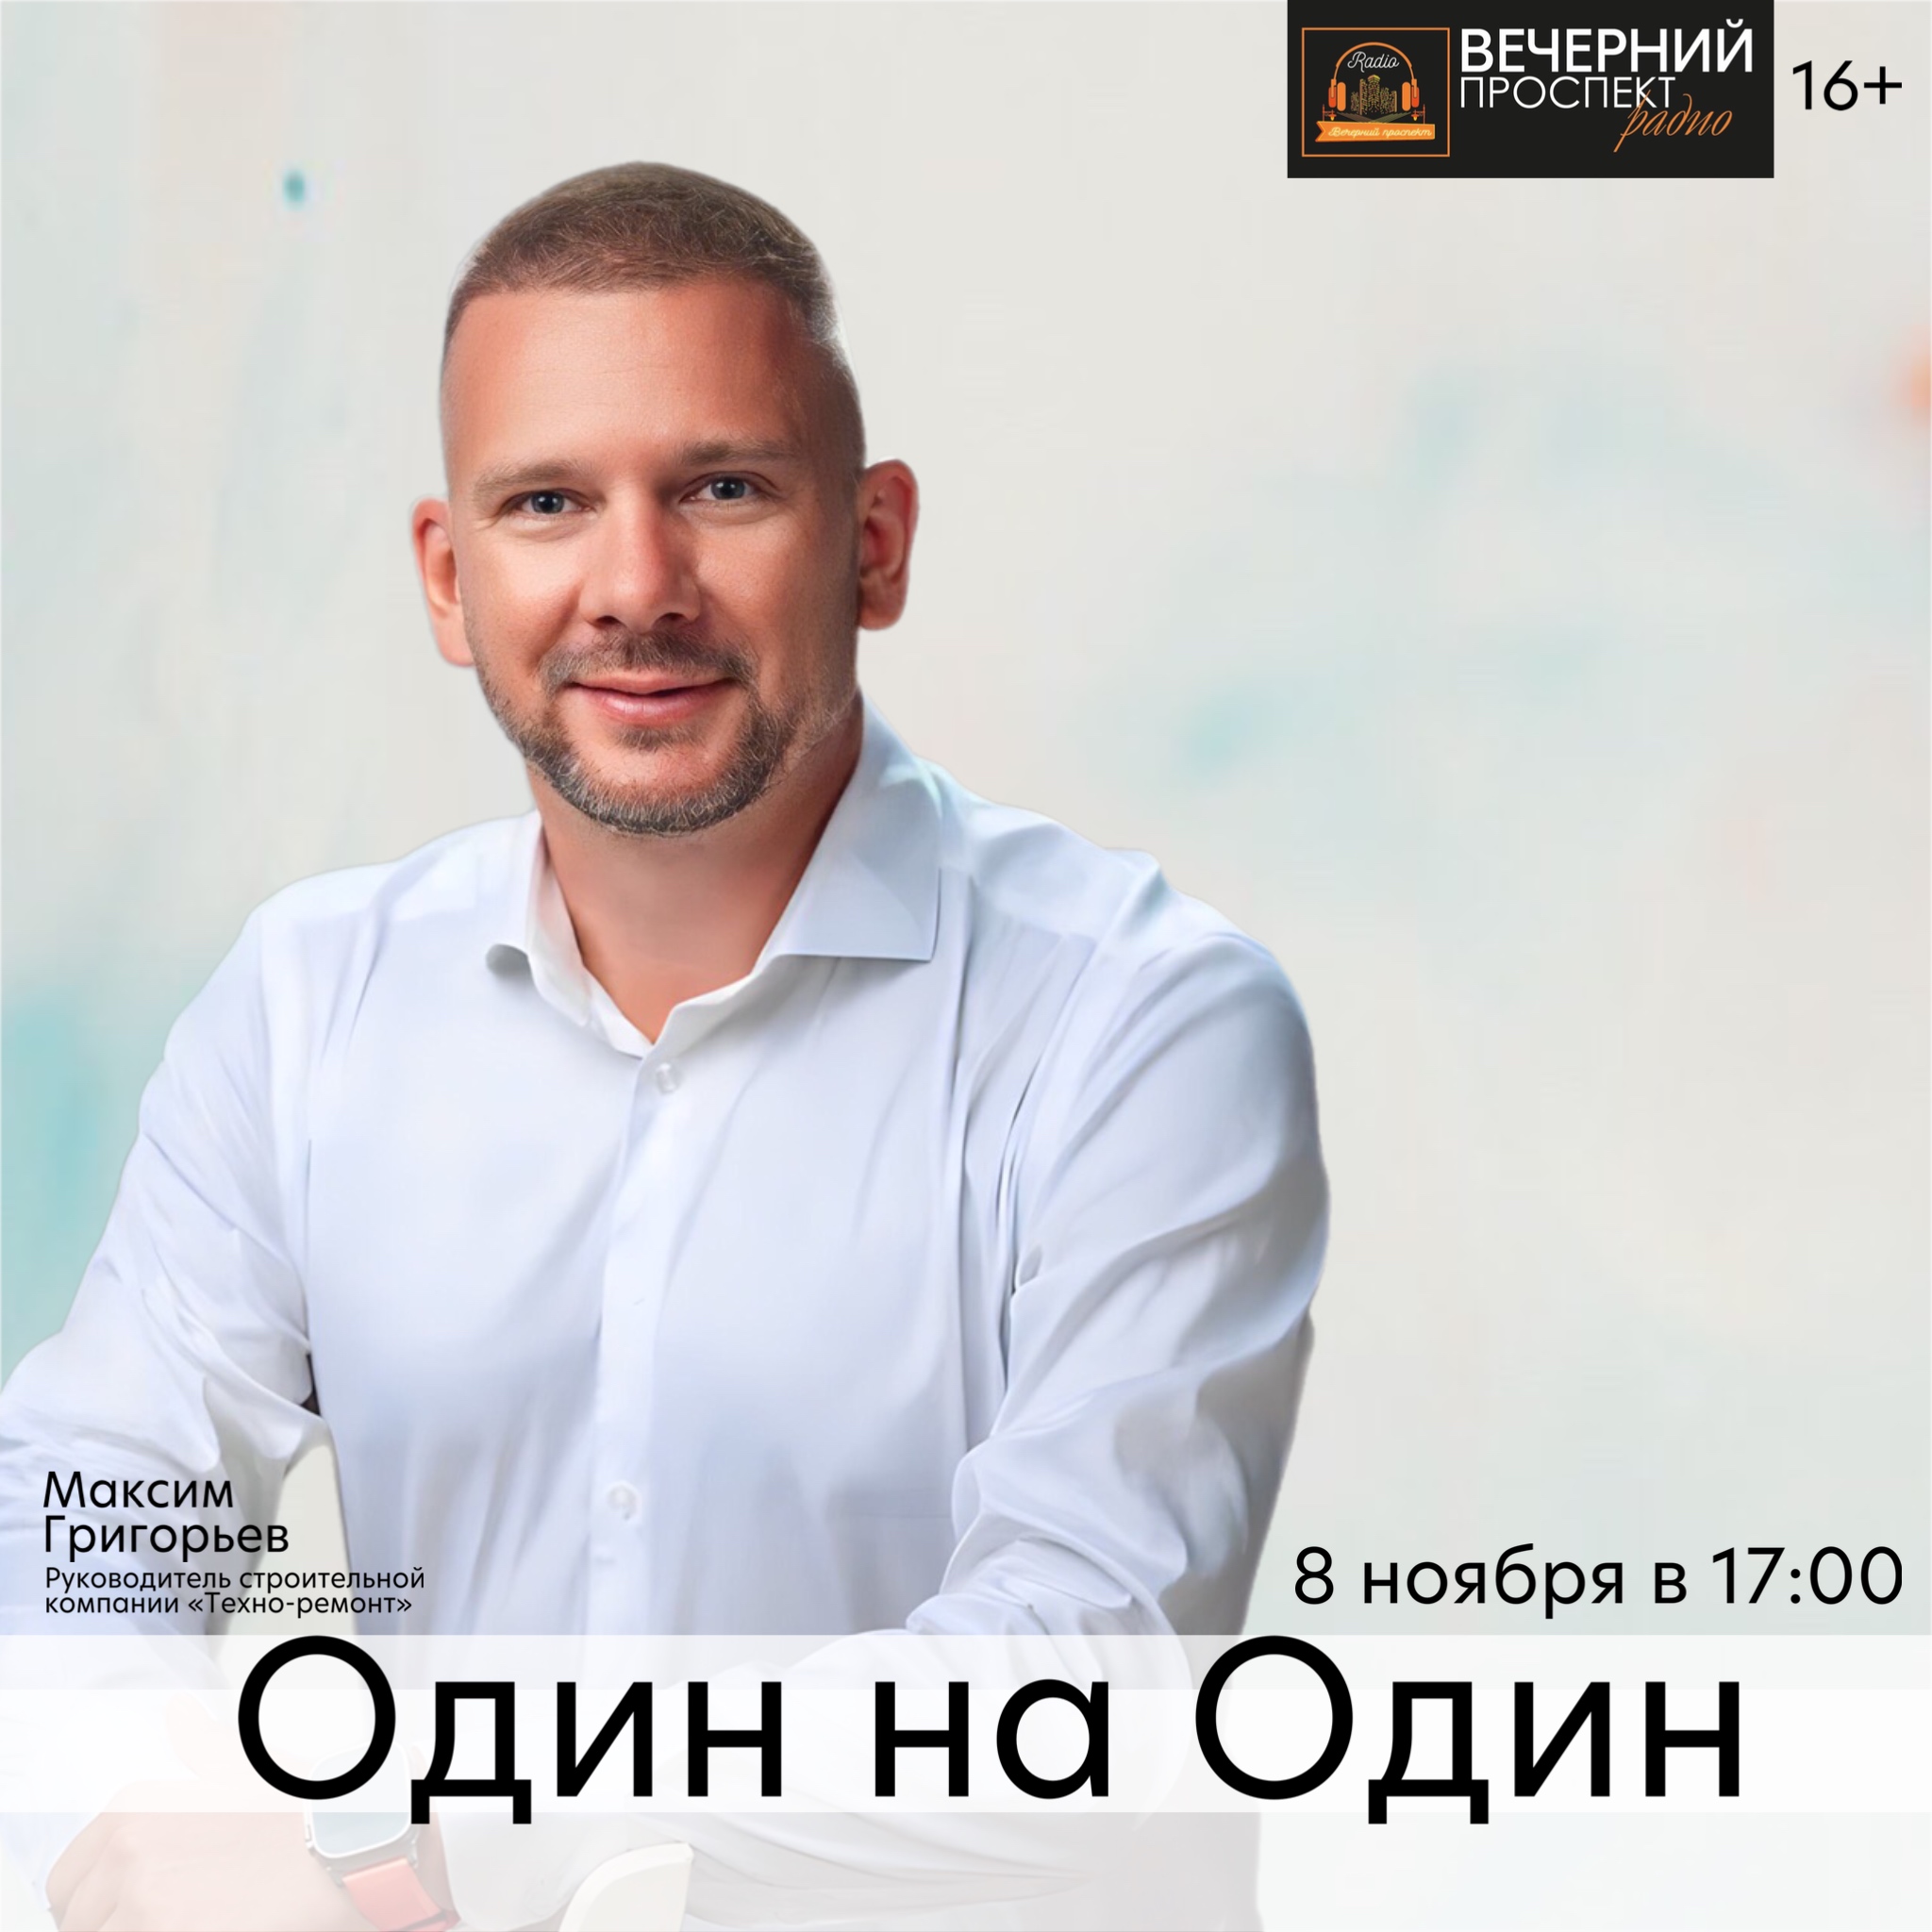 8 ноября с 17:00 до 18:00 в эфире программы «Один на Один» руководитель строительной компании «Техно-ремонт» Максим Григорьев.